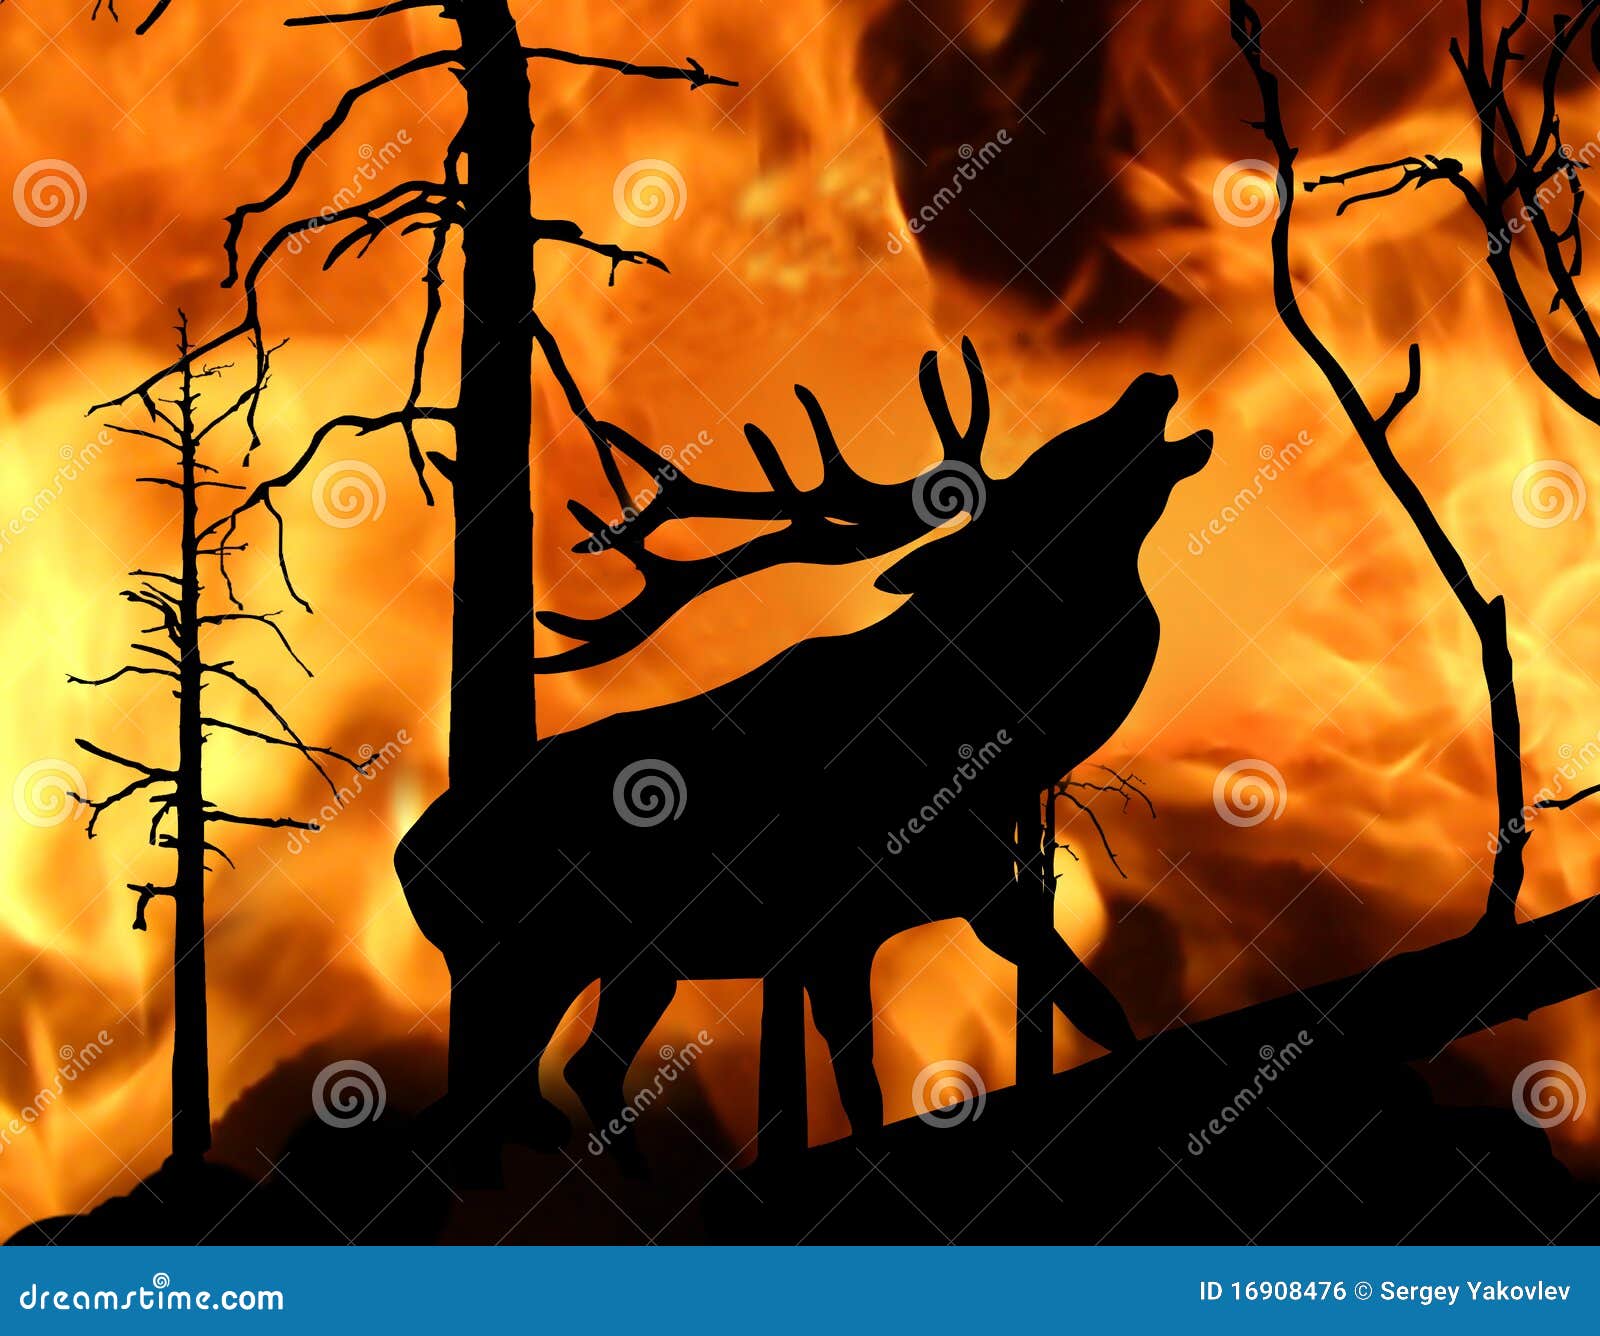 Горящий лось. Горящий лес с животными. Олень в горящем лесу. Олень и пожар. Пожар в лесу с животными.